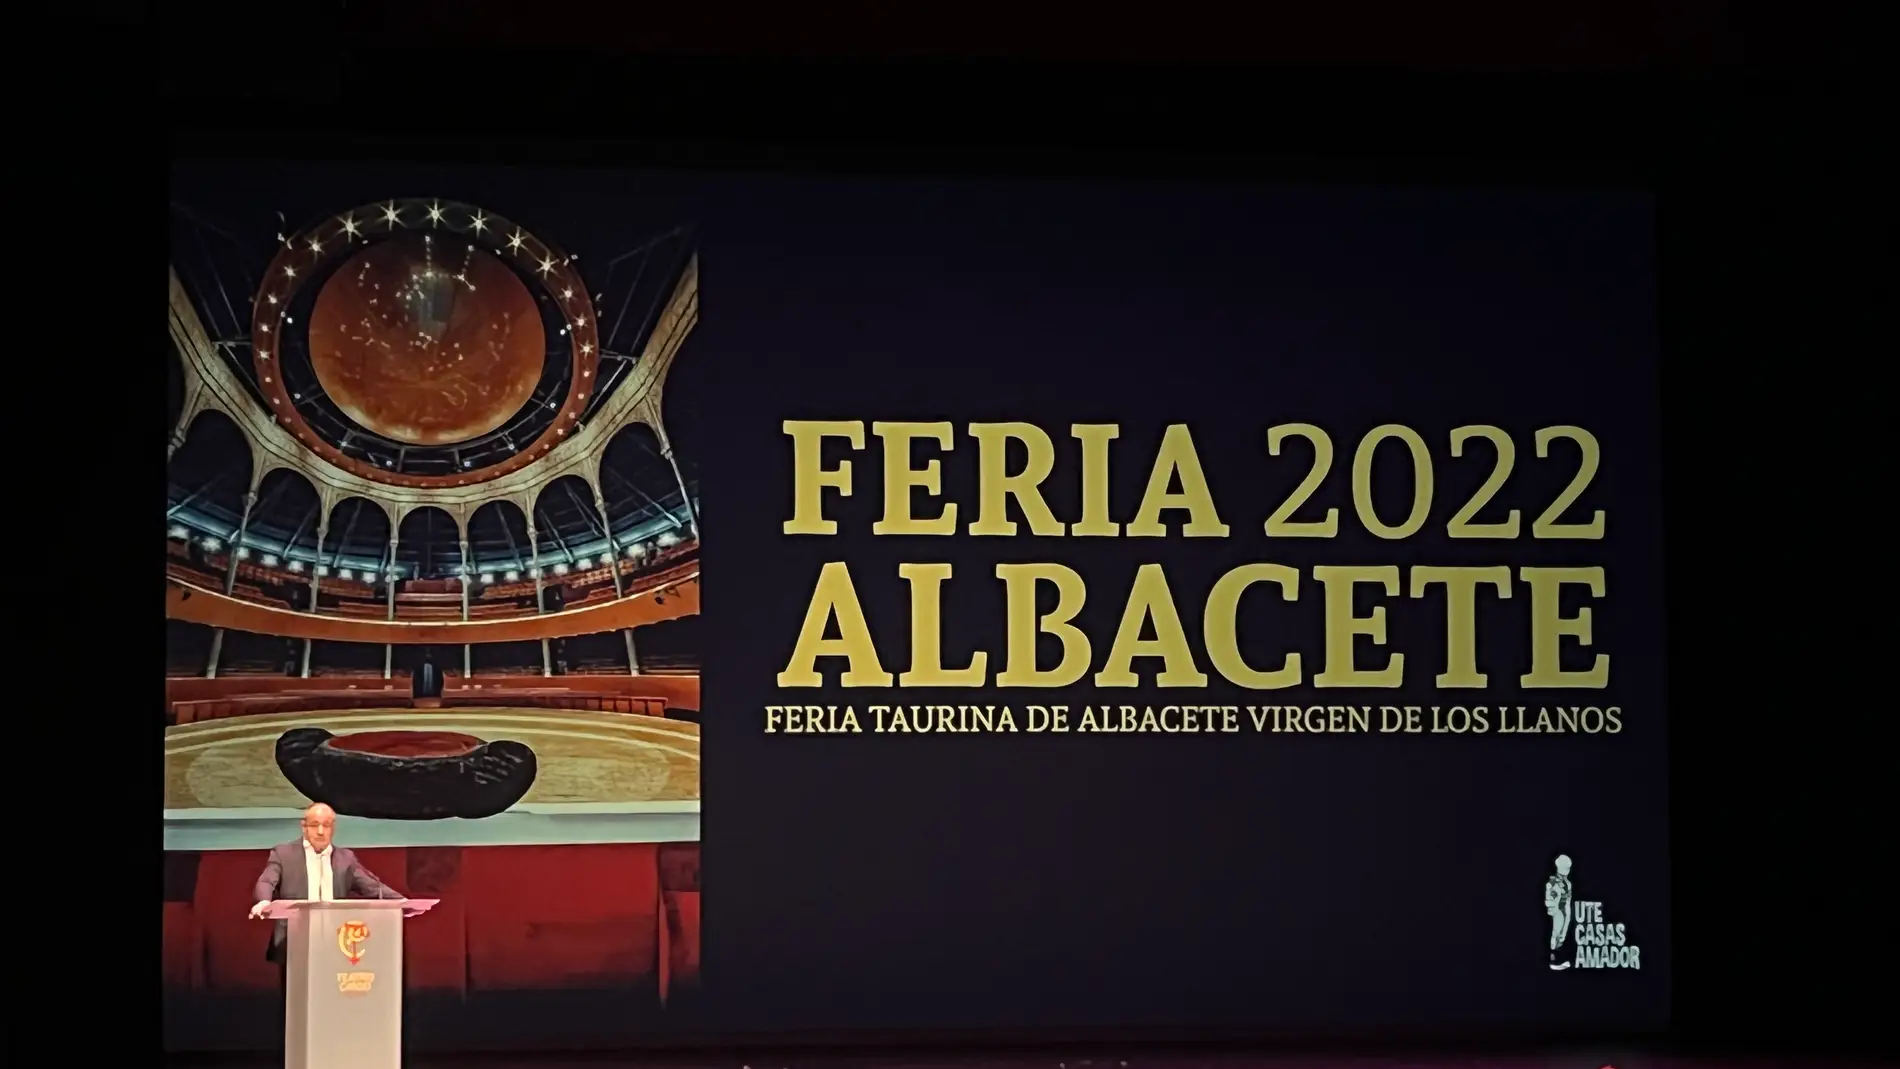 La Feria Taurina 2022 repite mano a mano entre Rubén Pinar y Sergio Serrano